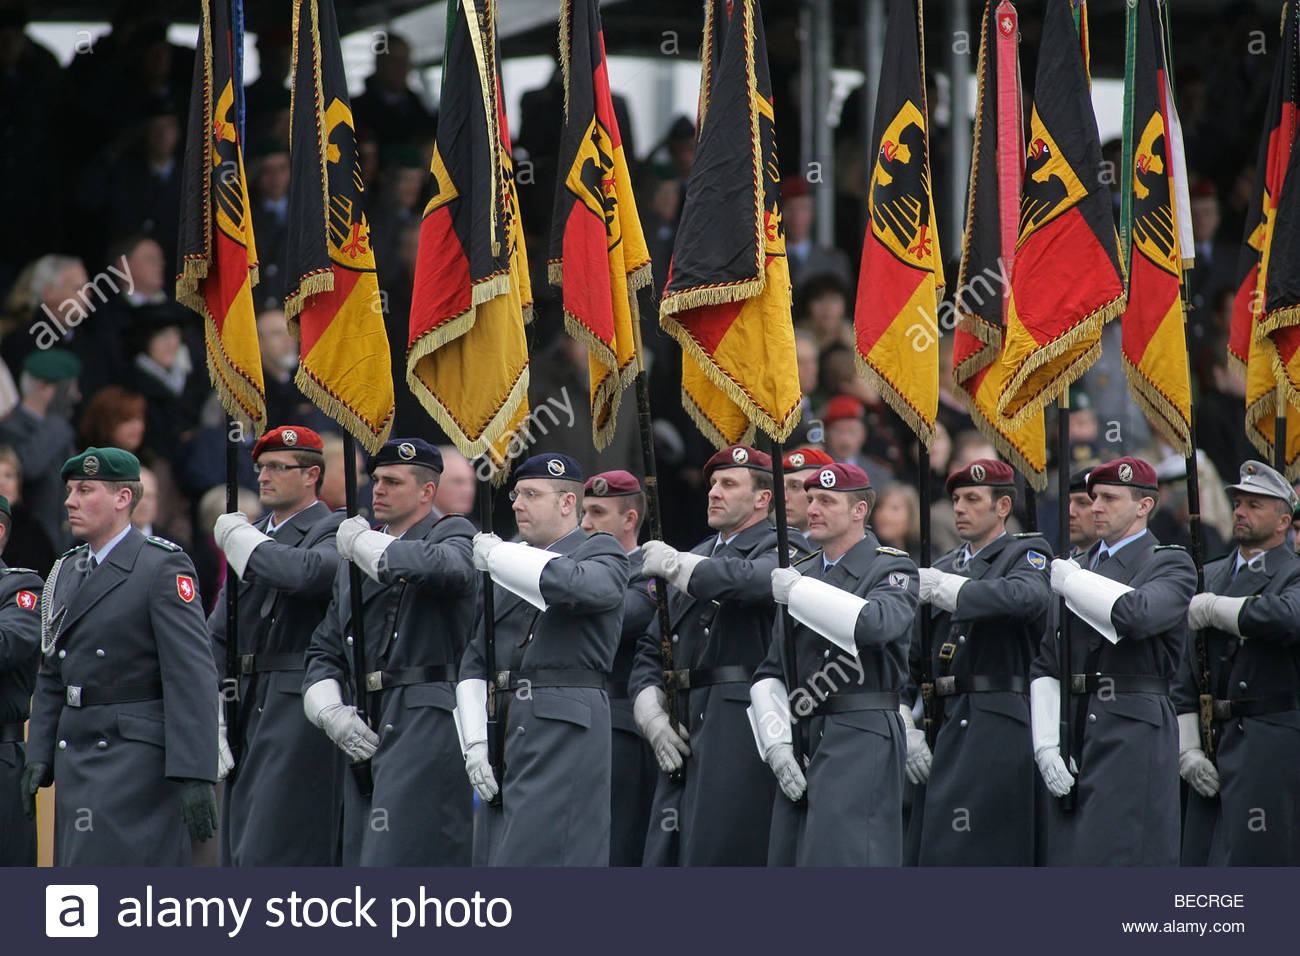 bundeswehr-german-armed-forces-flag-delegations-koblenz-rhineland-BECRGE.jpg